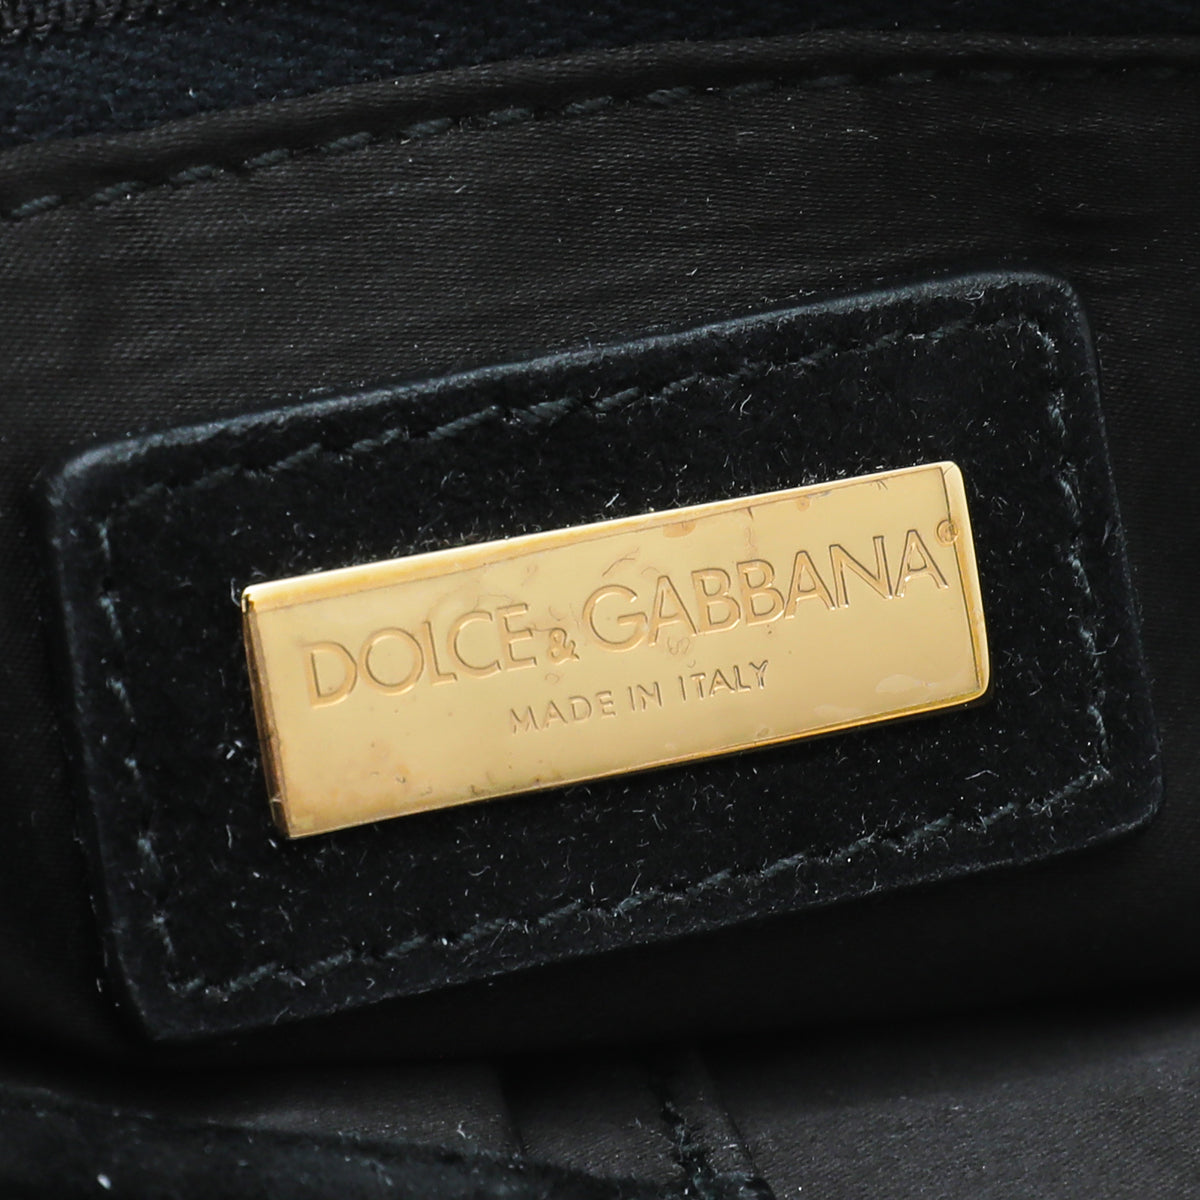 Dolce & Gabbana Brown Leopard Calf Hair Miss Charles Bag